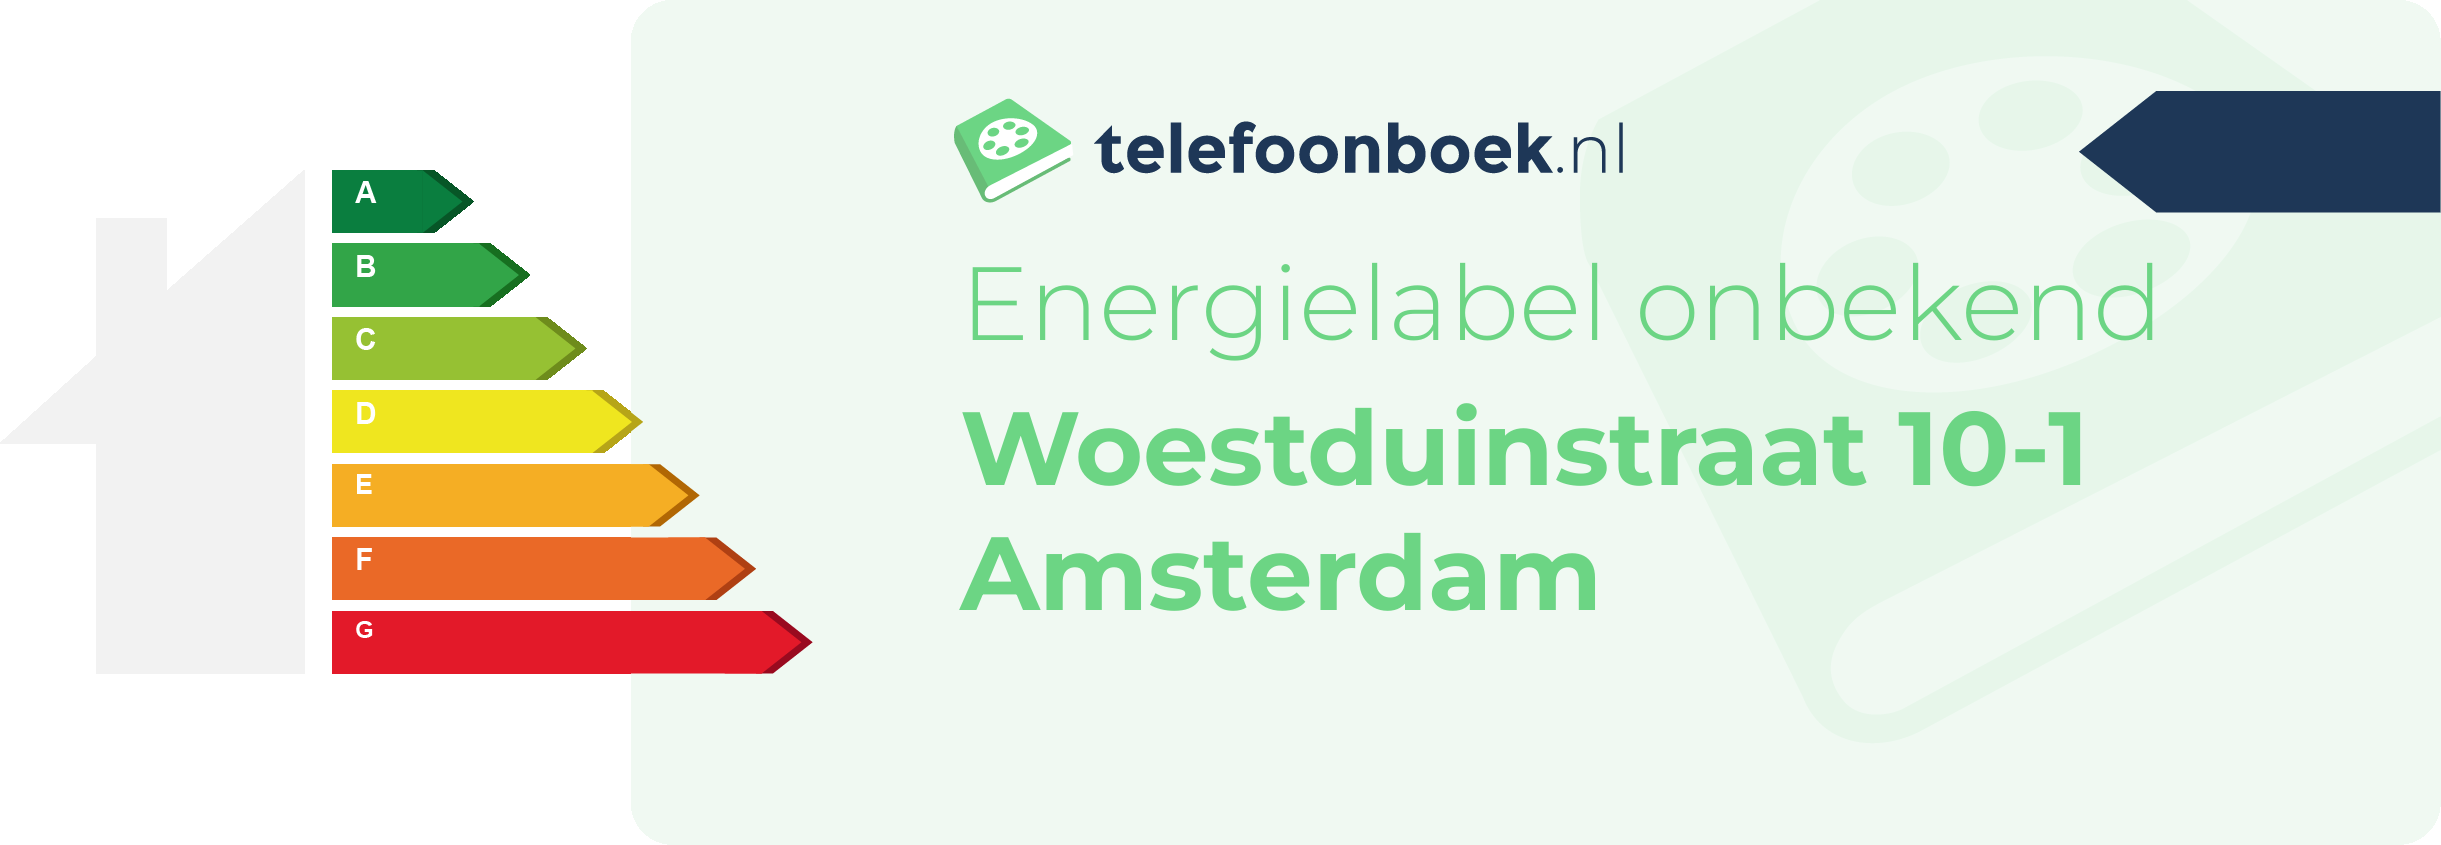 Energielabel Woestduinstraat 10-1 Amsterdam